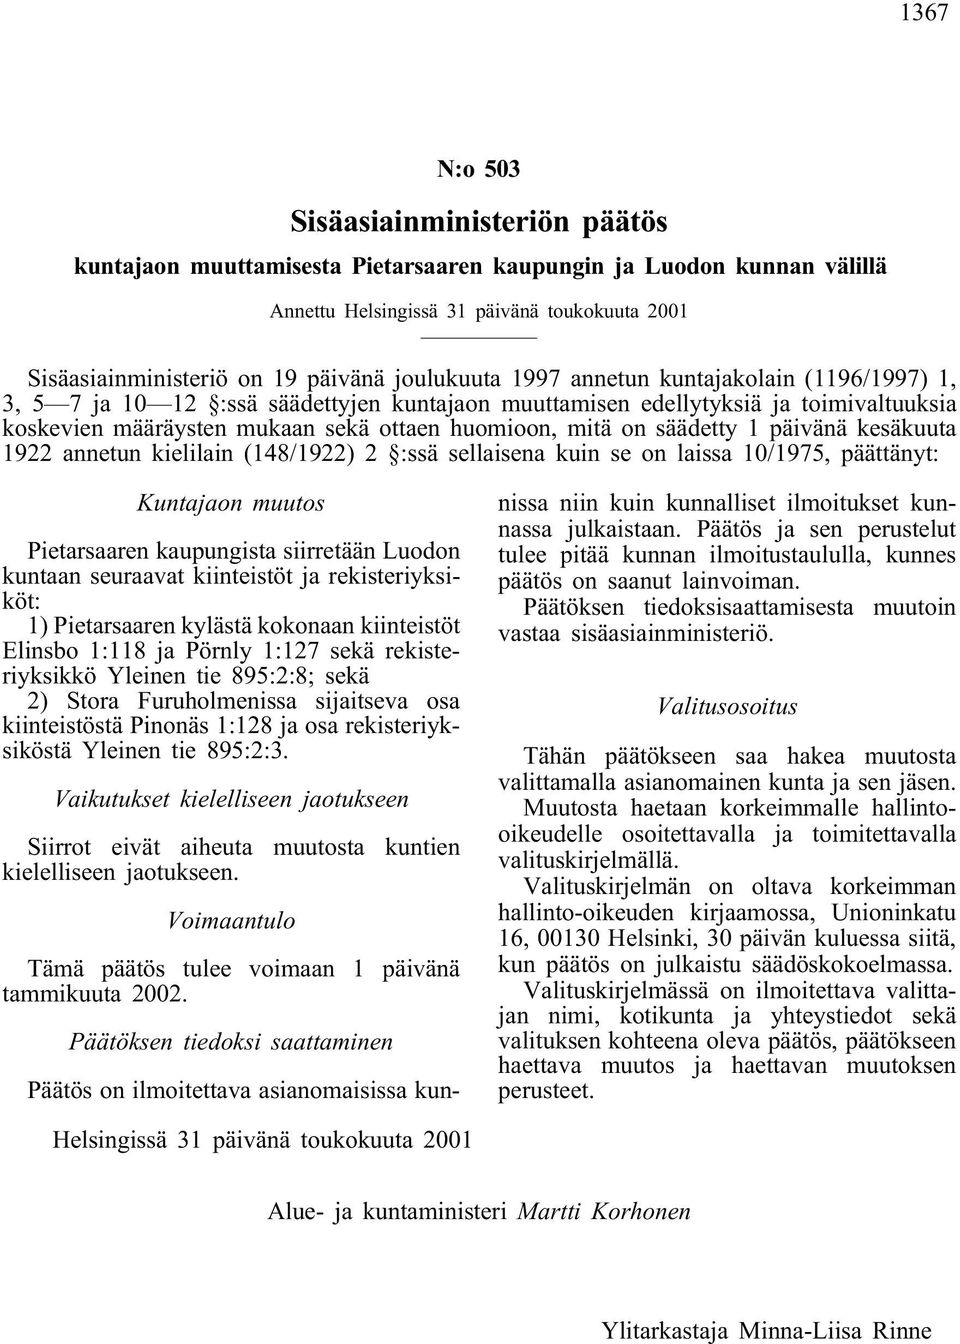 säädetty 1 päivänä kesäkuuta 1922 annetun kielilain (148/1922) 2 :ssä sellaisena kuin se on laissa 10/1975, päättänyt: Kuntajaon muutos Pietarsaaren kaupungista siirretään Luodon kuntaan seuraavat